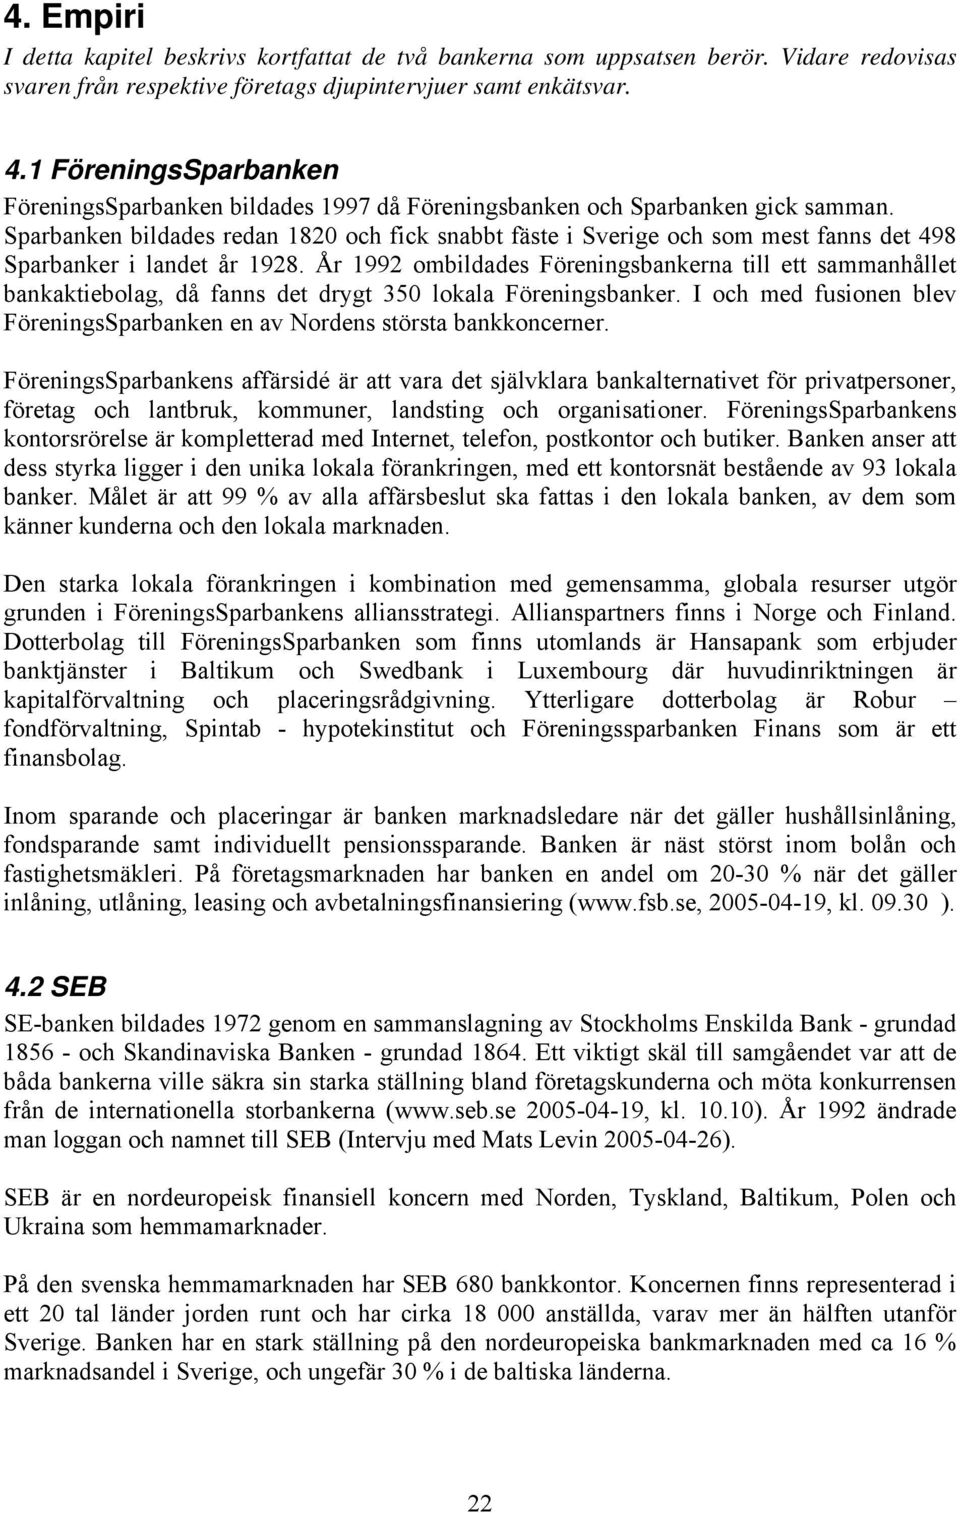 Sparbanken bildades redan 1820 och fick snabbt fäste i Sverige och som mest fanns det 498 Sparbanker i landet år 1928.